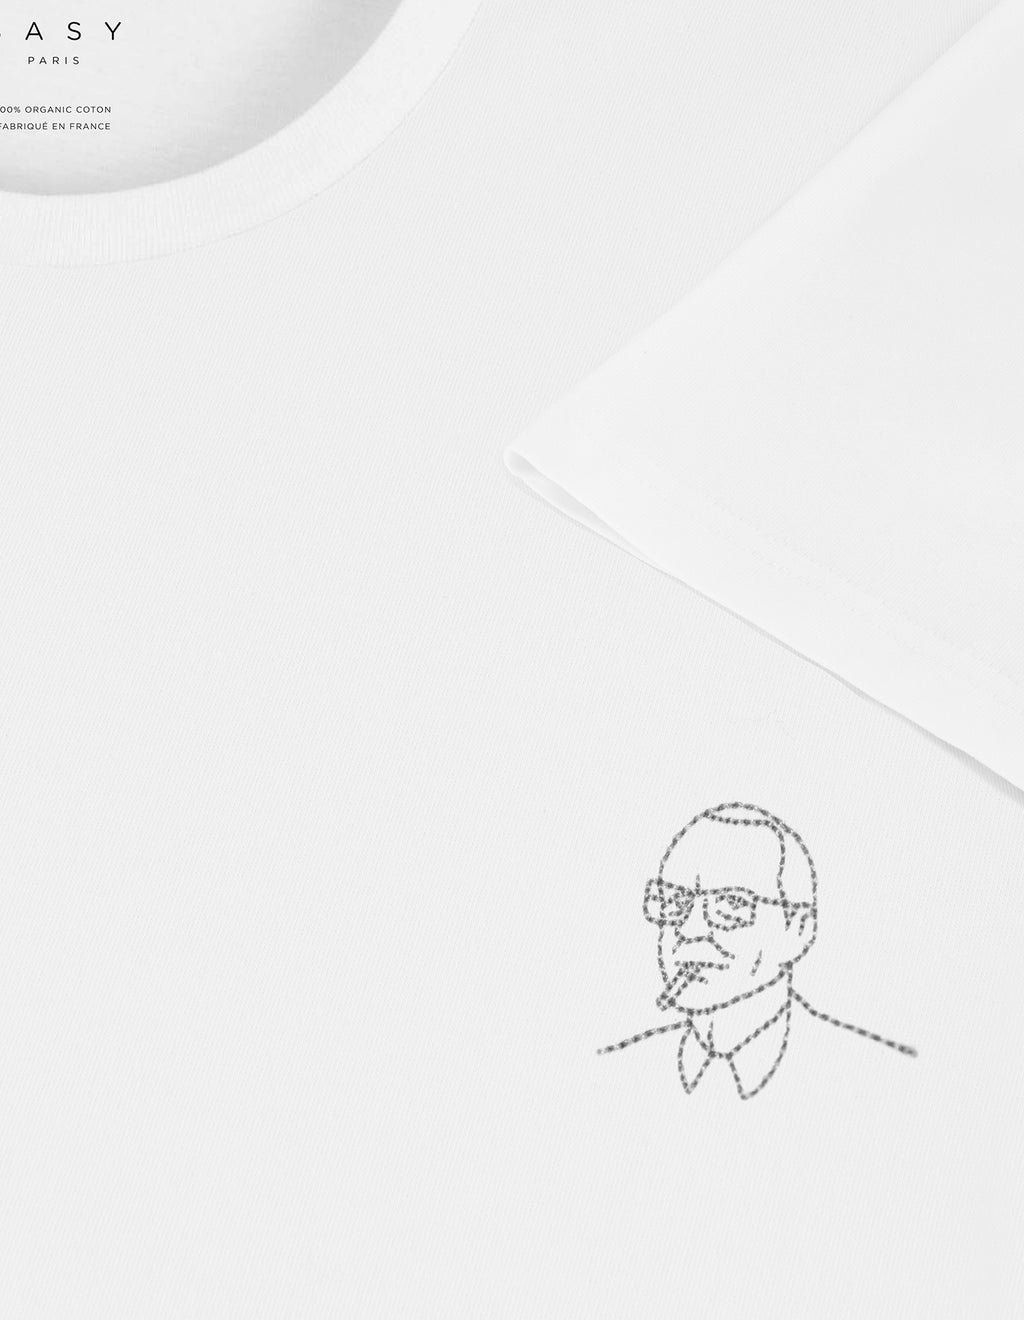 T-shirt blanc brodé Jacques Chirac